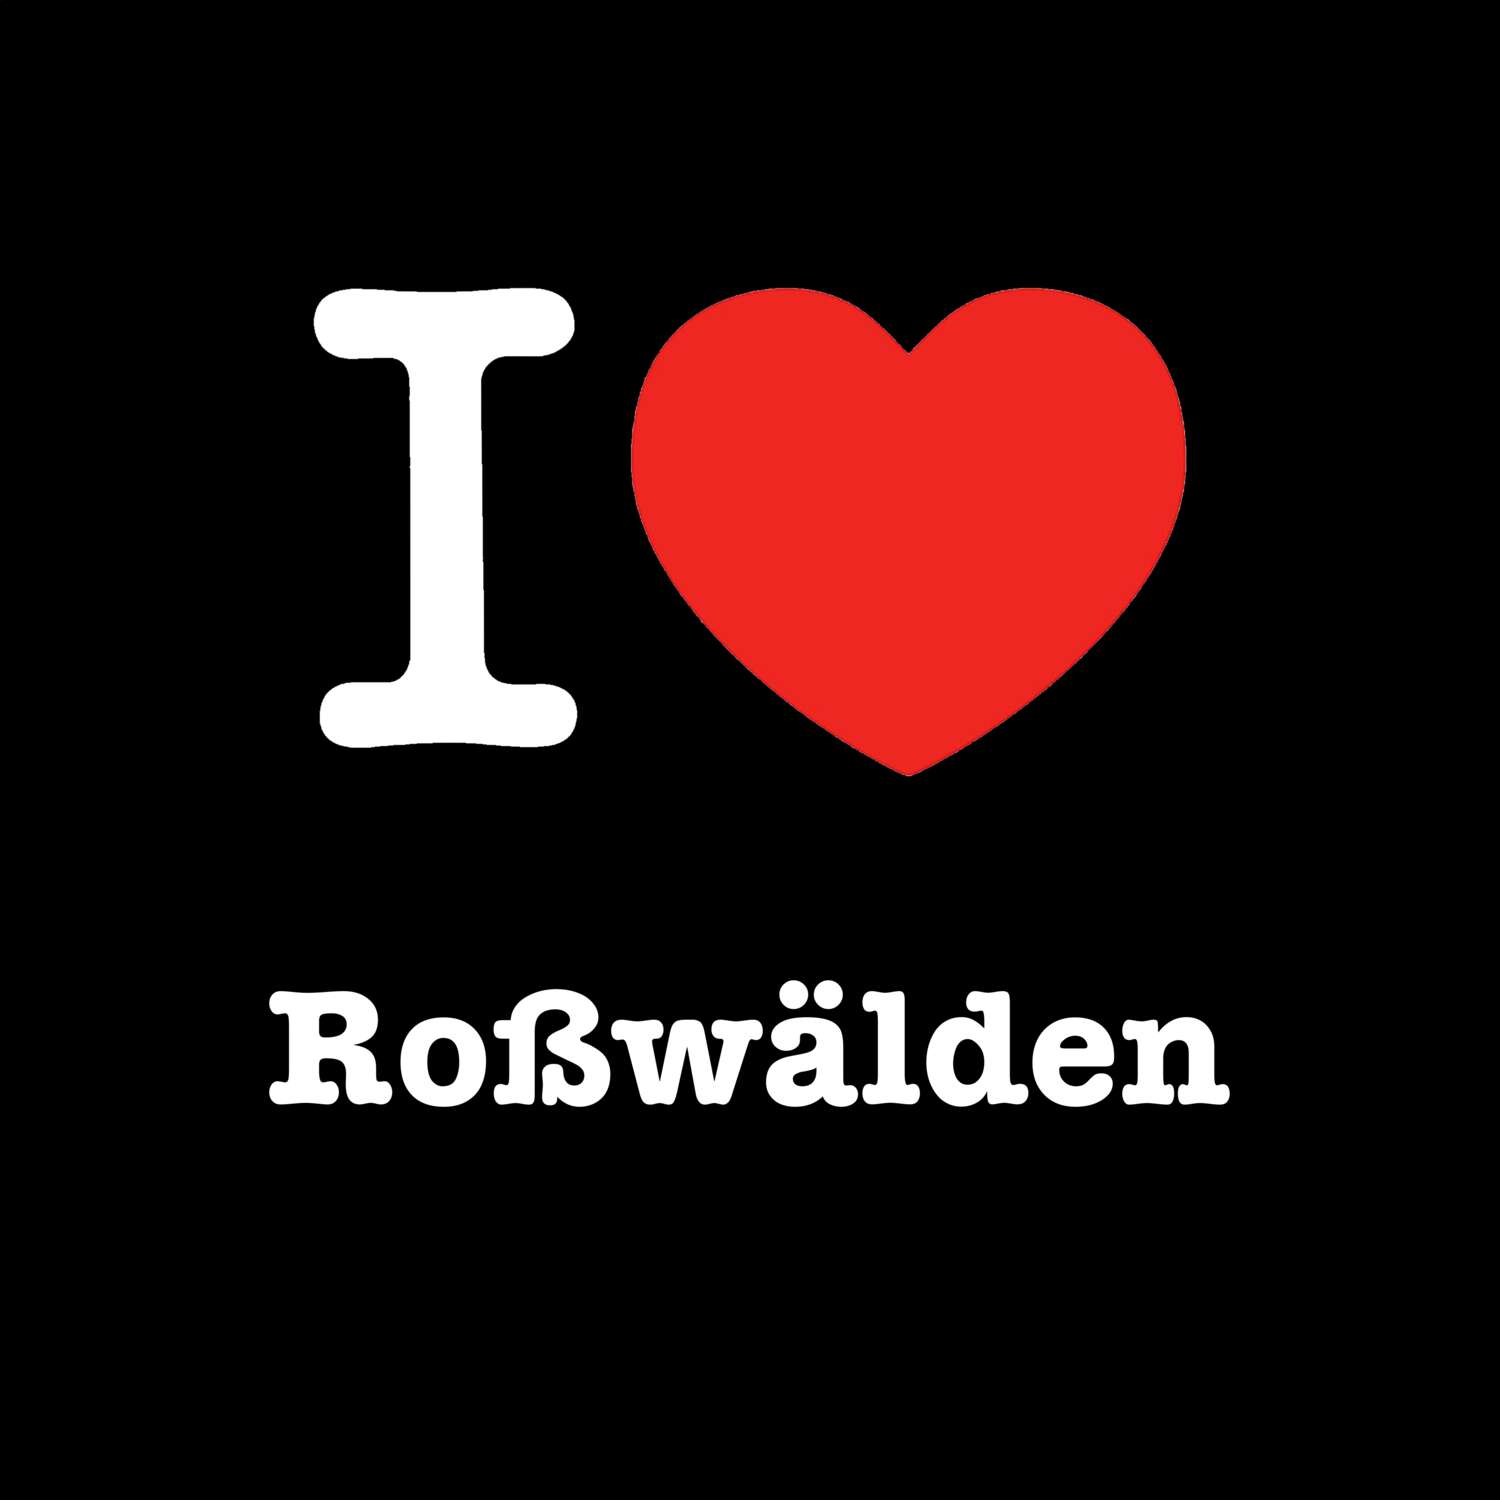 Roßwälden T-Shirt »I love«